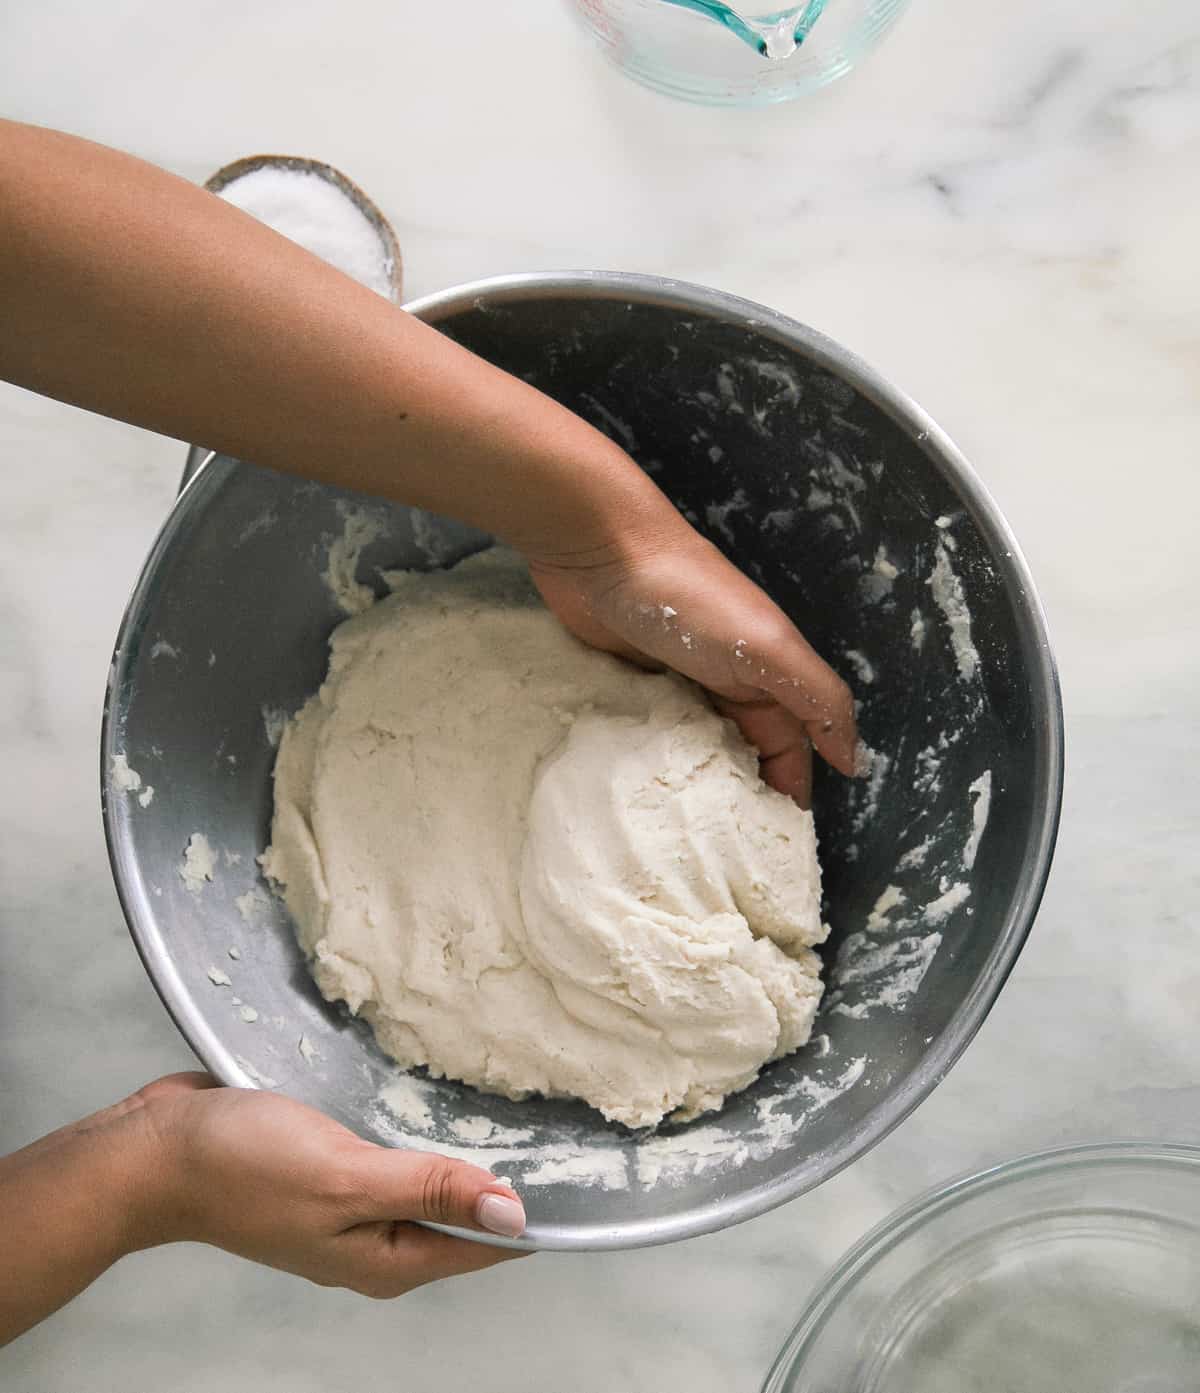 Pupusa dough being mixed